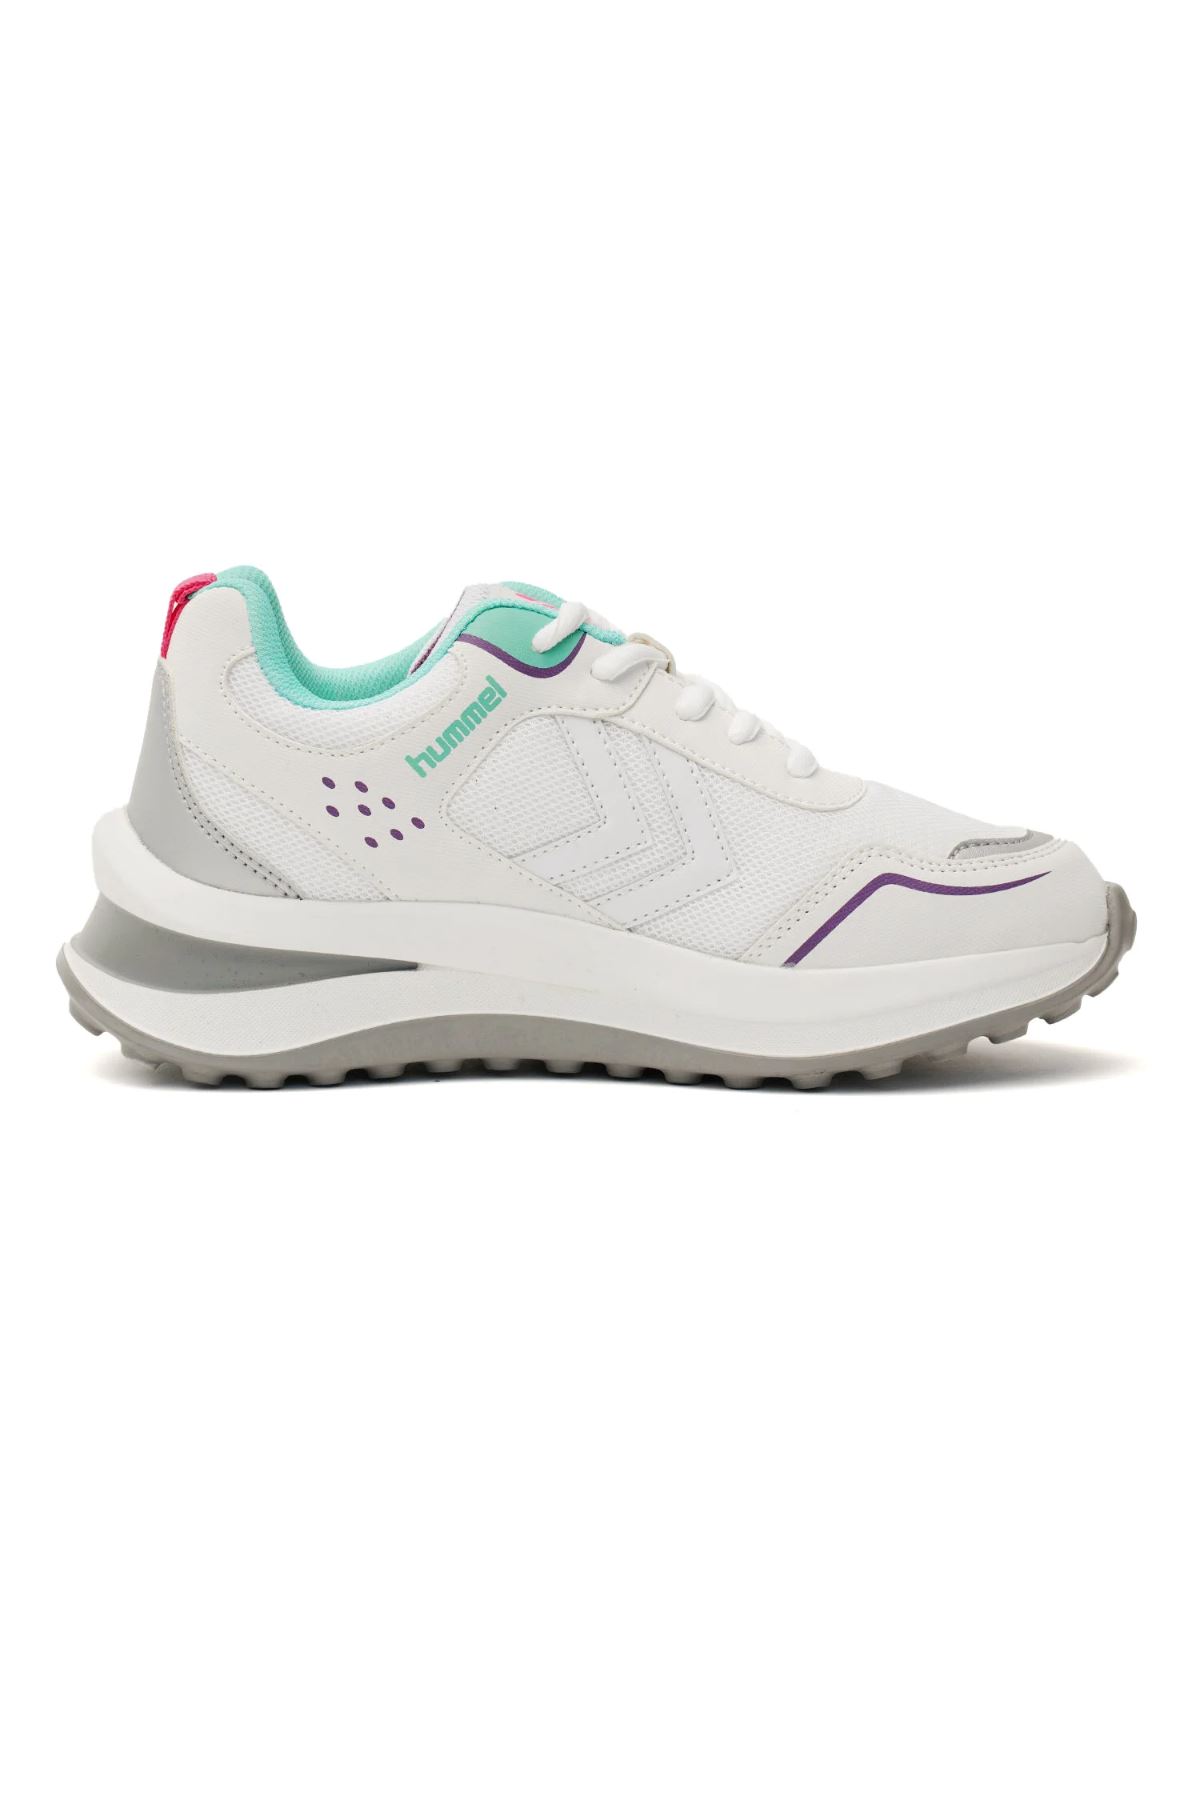 Hummel Hml Patara Kadın Beyaz Spor Ayakkabı - 900309-9208